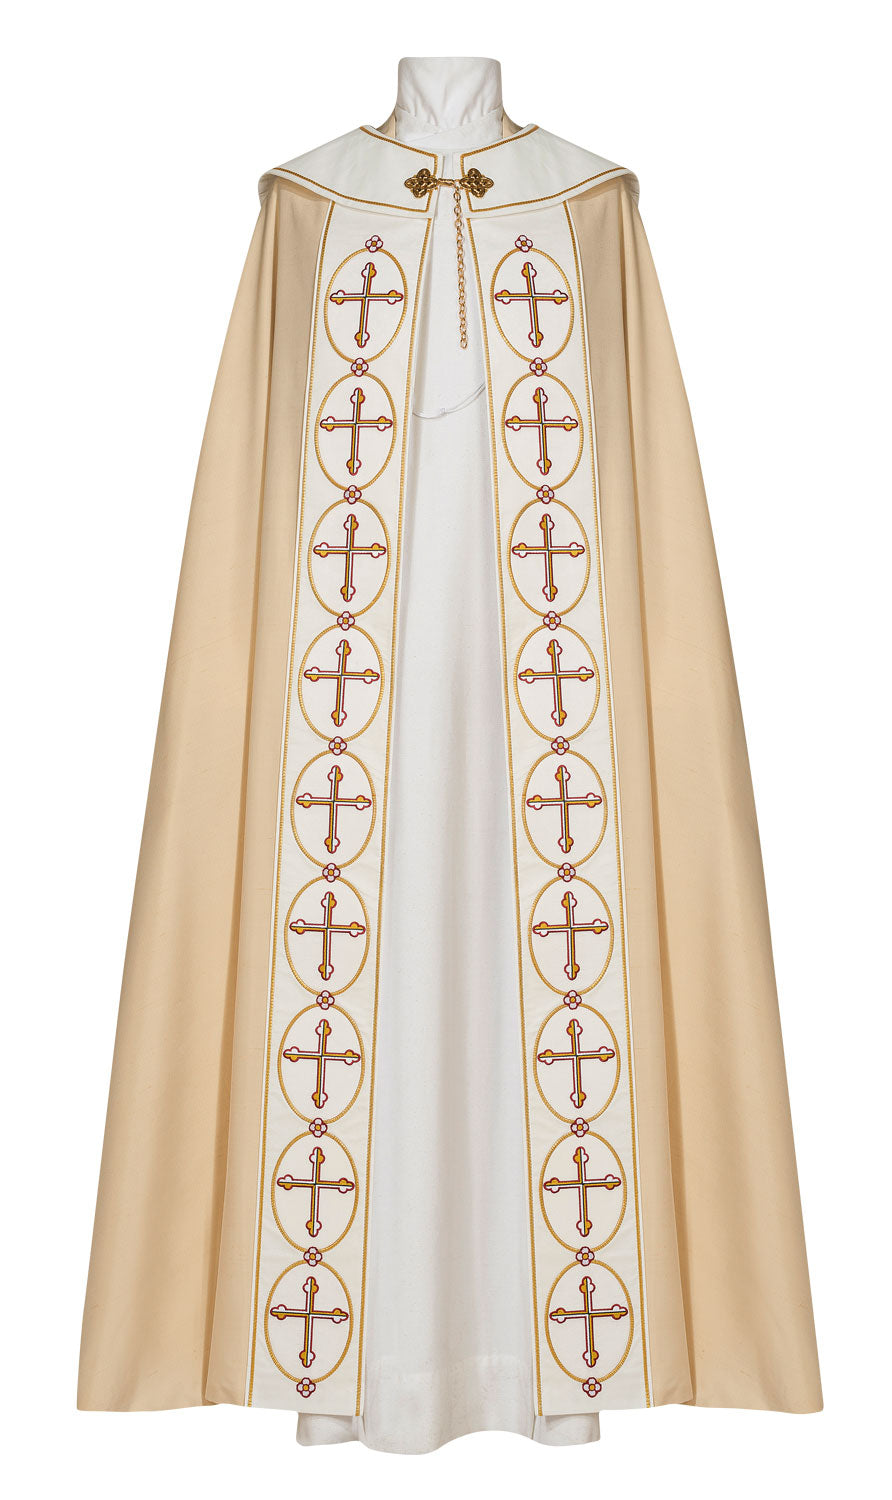 papal-cope-114-14170-sm.jpg